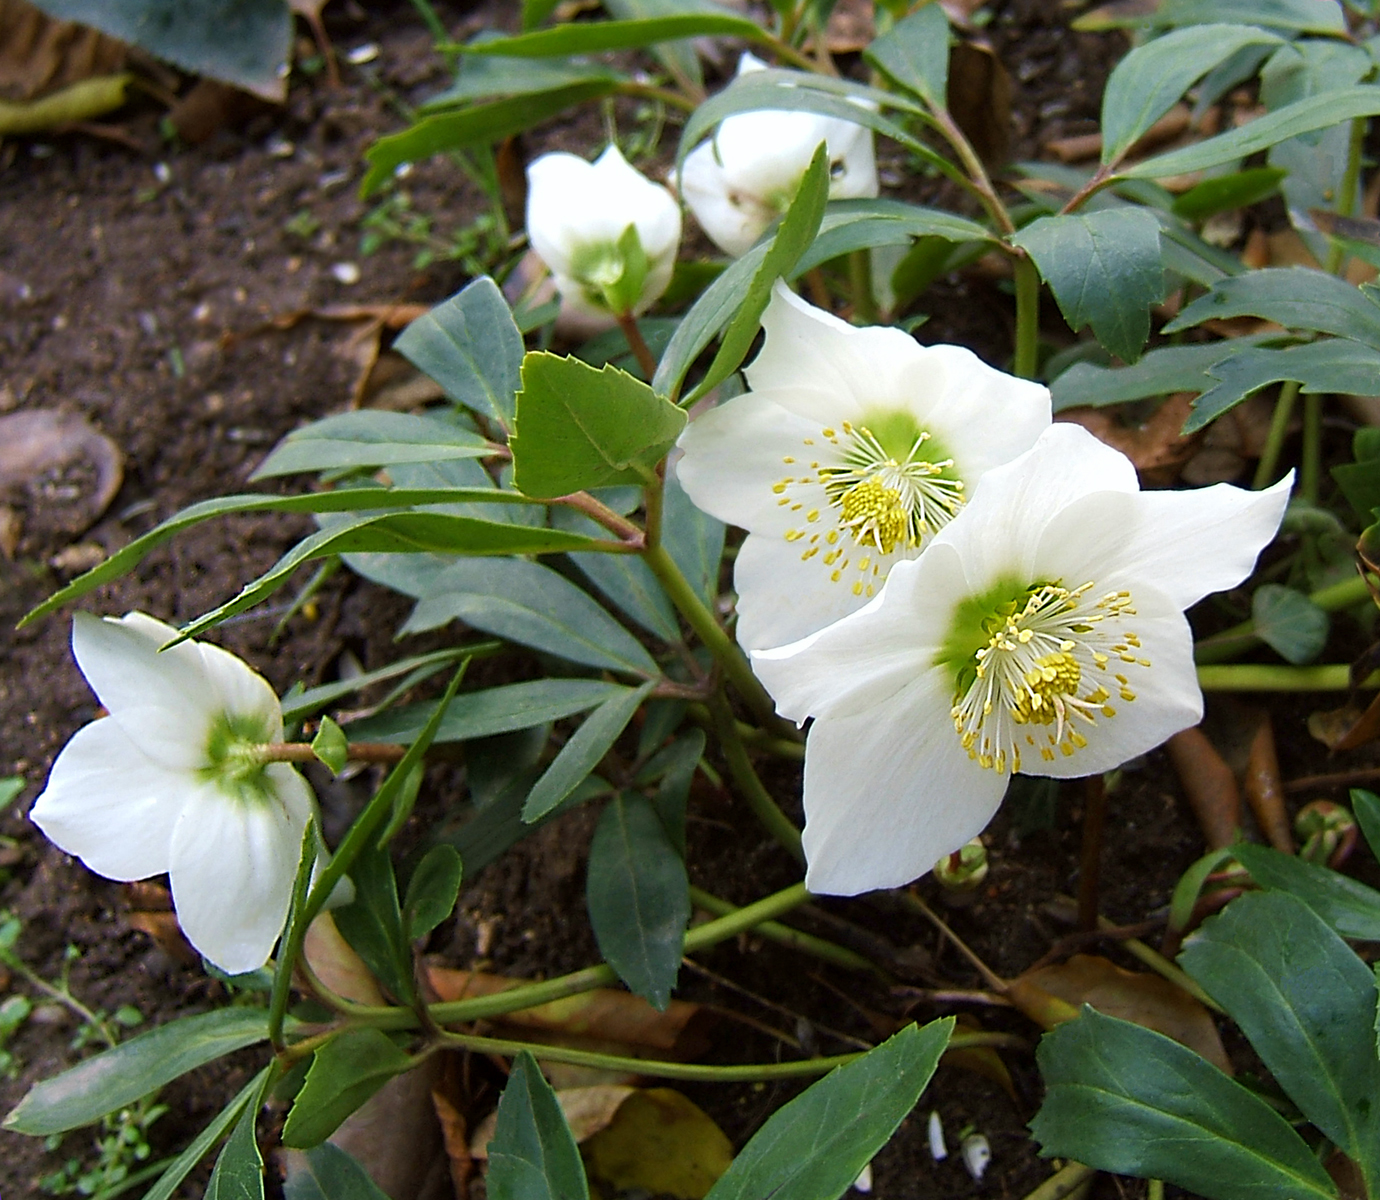 Ciemiernik biały (Helleborus niger) , na zdjęciu białe kwiaty z widocznymi żółtymi w środku kwiatostanu pręcikami i zielonymi liścmi,zdjęcie : https://pl.wikipedia.org/wiki/ciemiernik_bialy